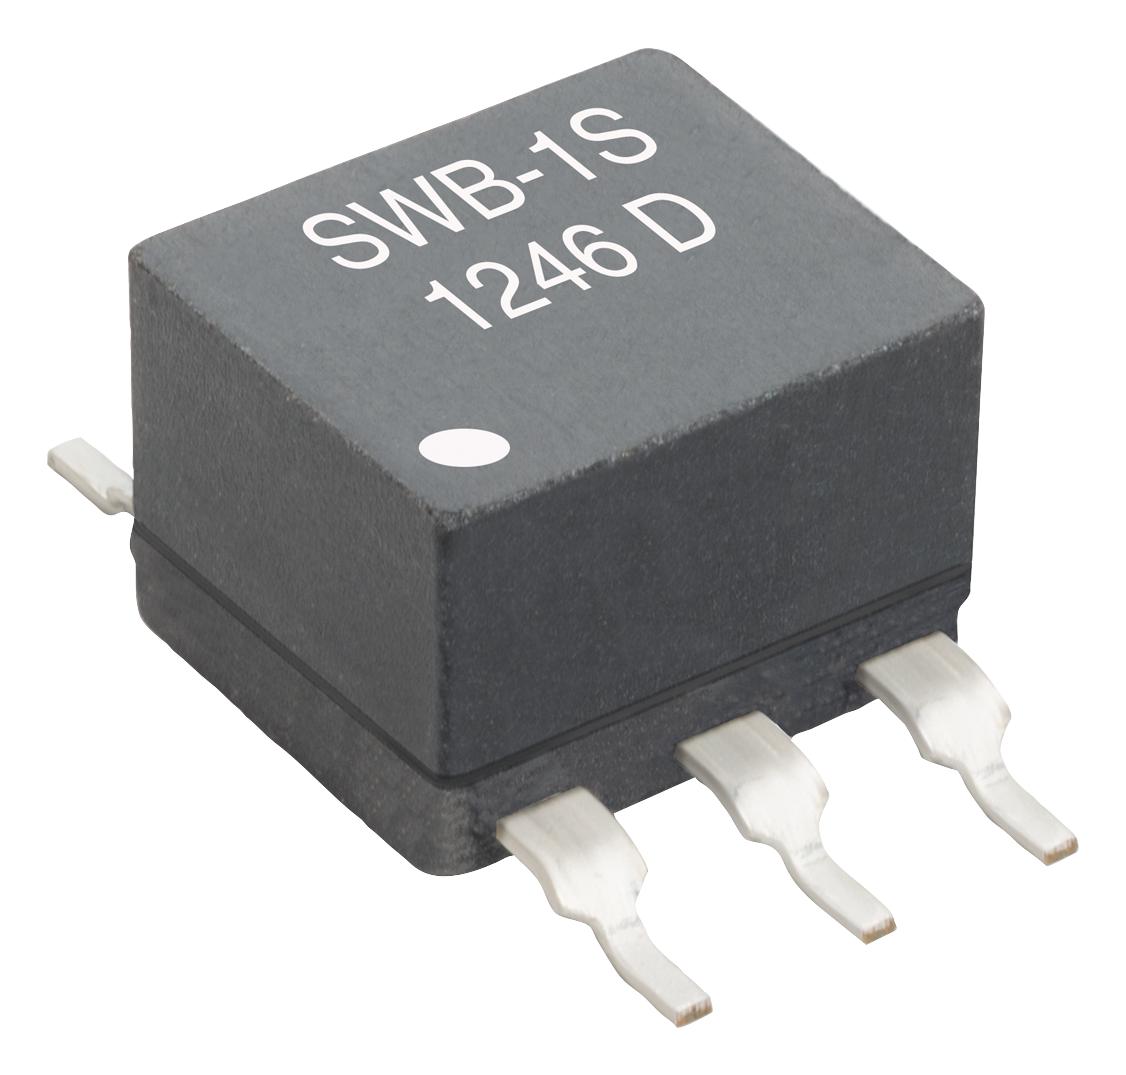 SWB1040-SMLD RF TRANSFORMER, 4:1, 300MHZ COILCRAFT